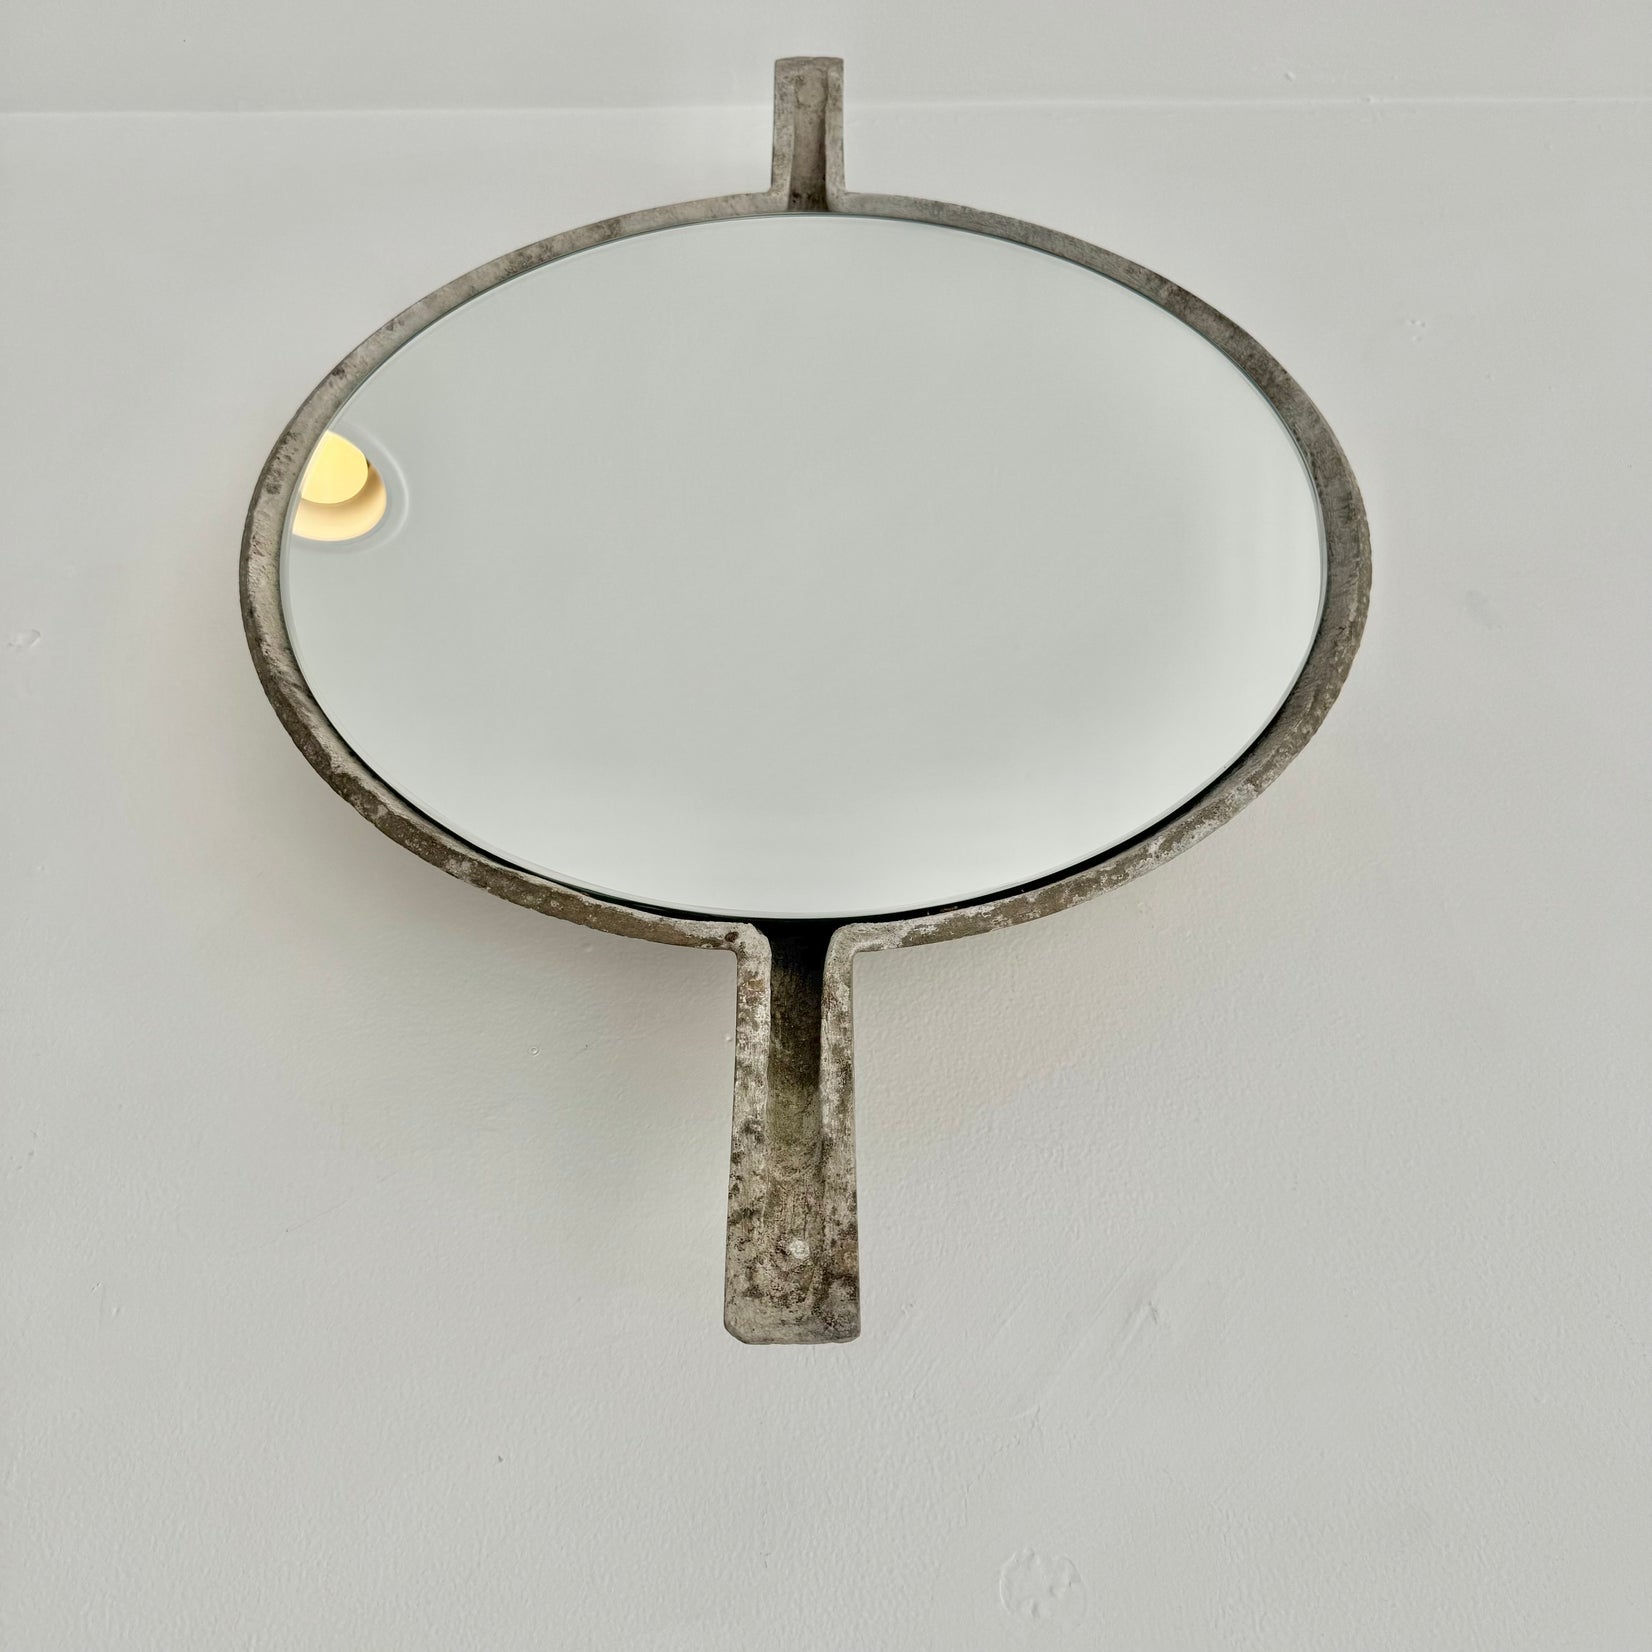 Willy Guhl Concrete Mirror with Spikes, 1960s Switzerland